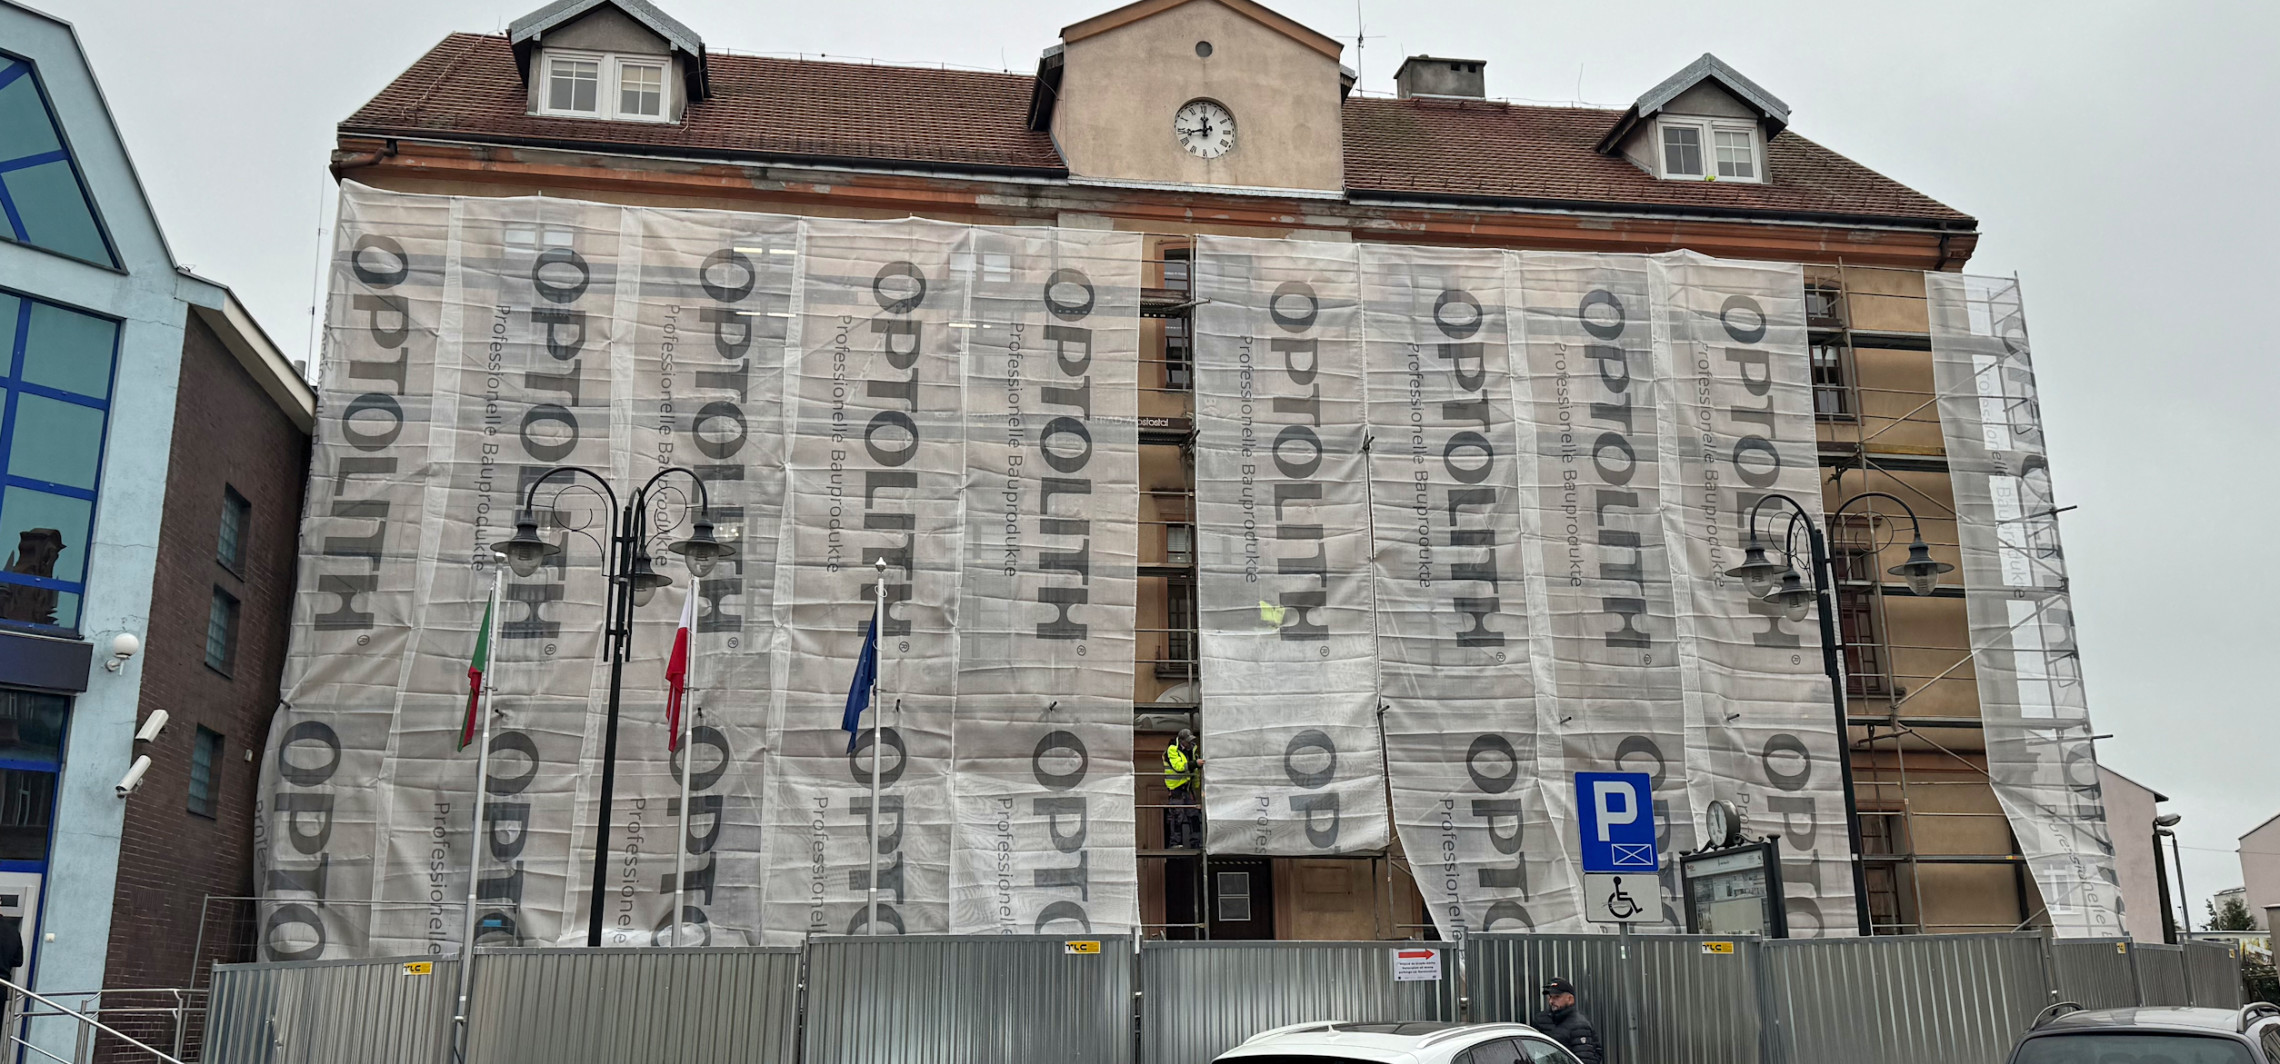 Inowrocław - Przed urzędem stanęły rusztowania. Rusza remont